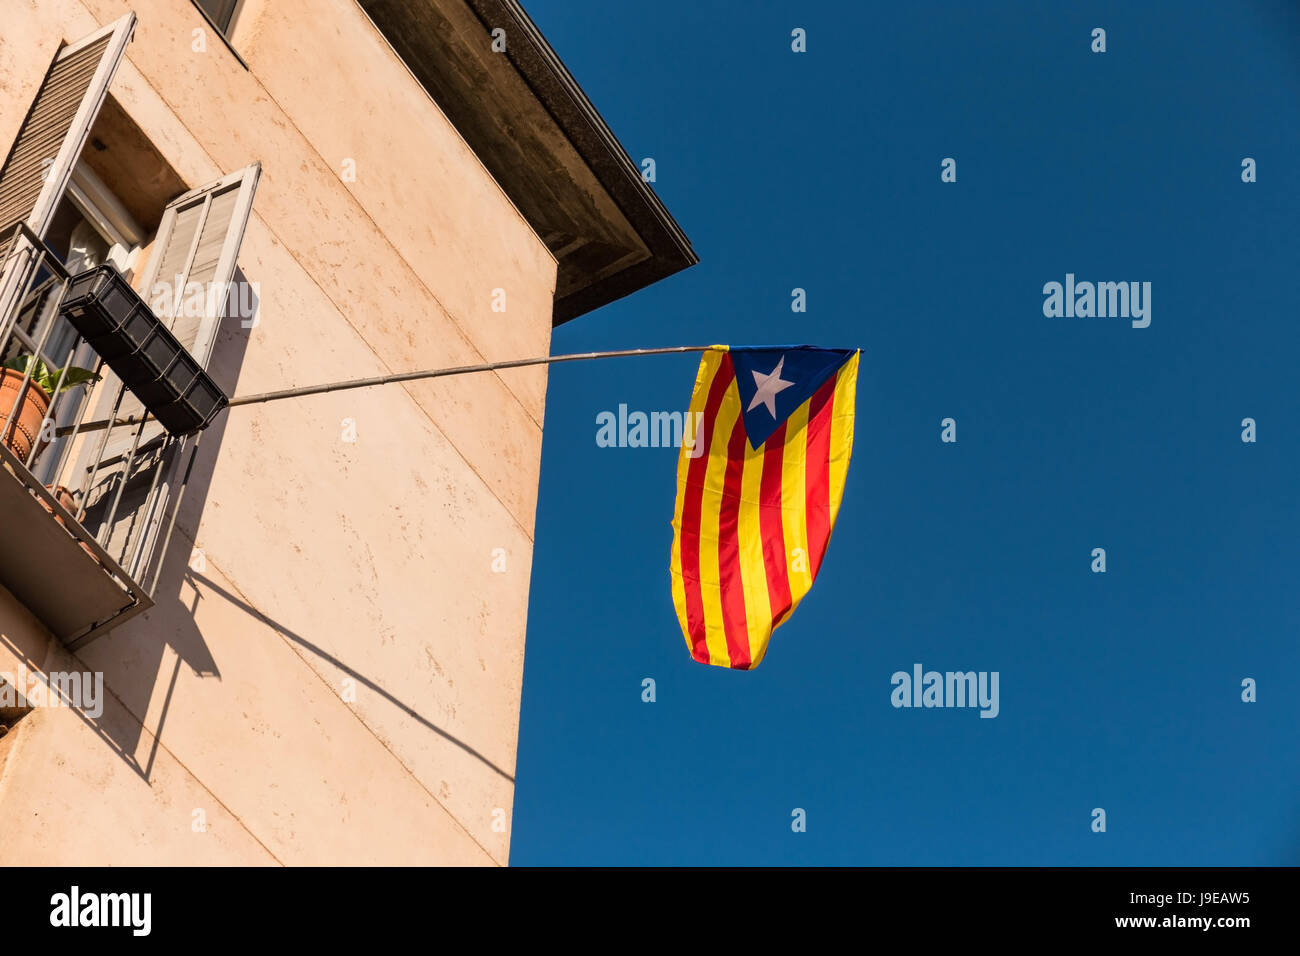 Bandera del movimiento de independencia de Cataluña Estelada, llamado (no oficial), en una calle del centro de la ciudad de Girona, Costa Brava, Cataluña, España. Foto de stock